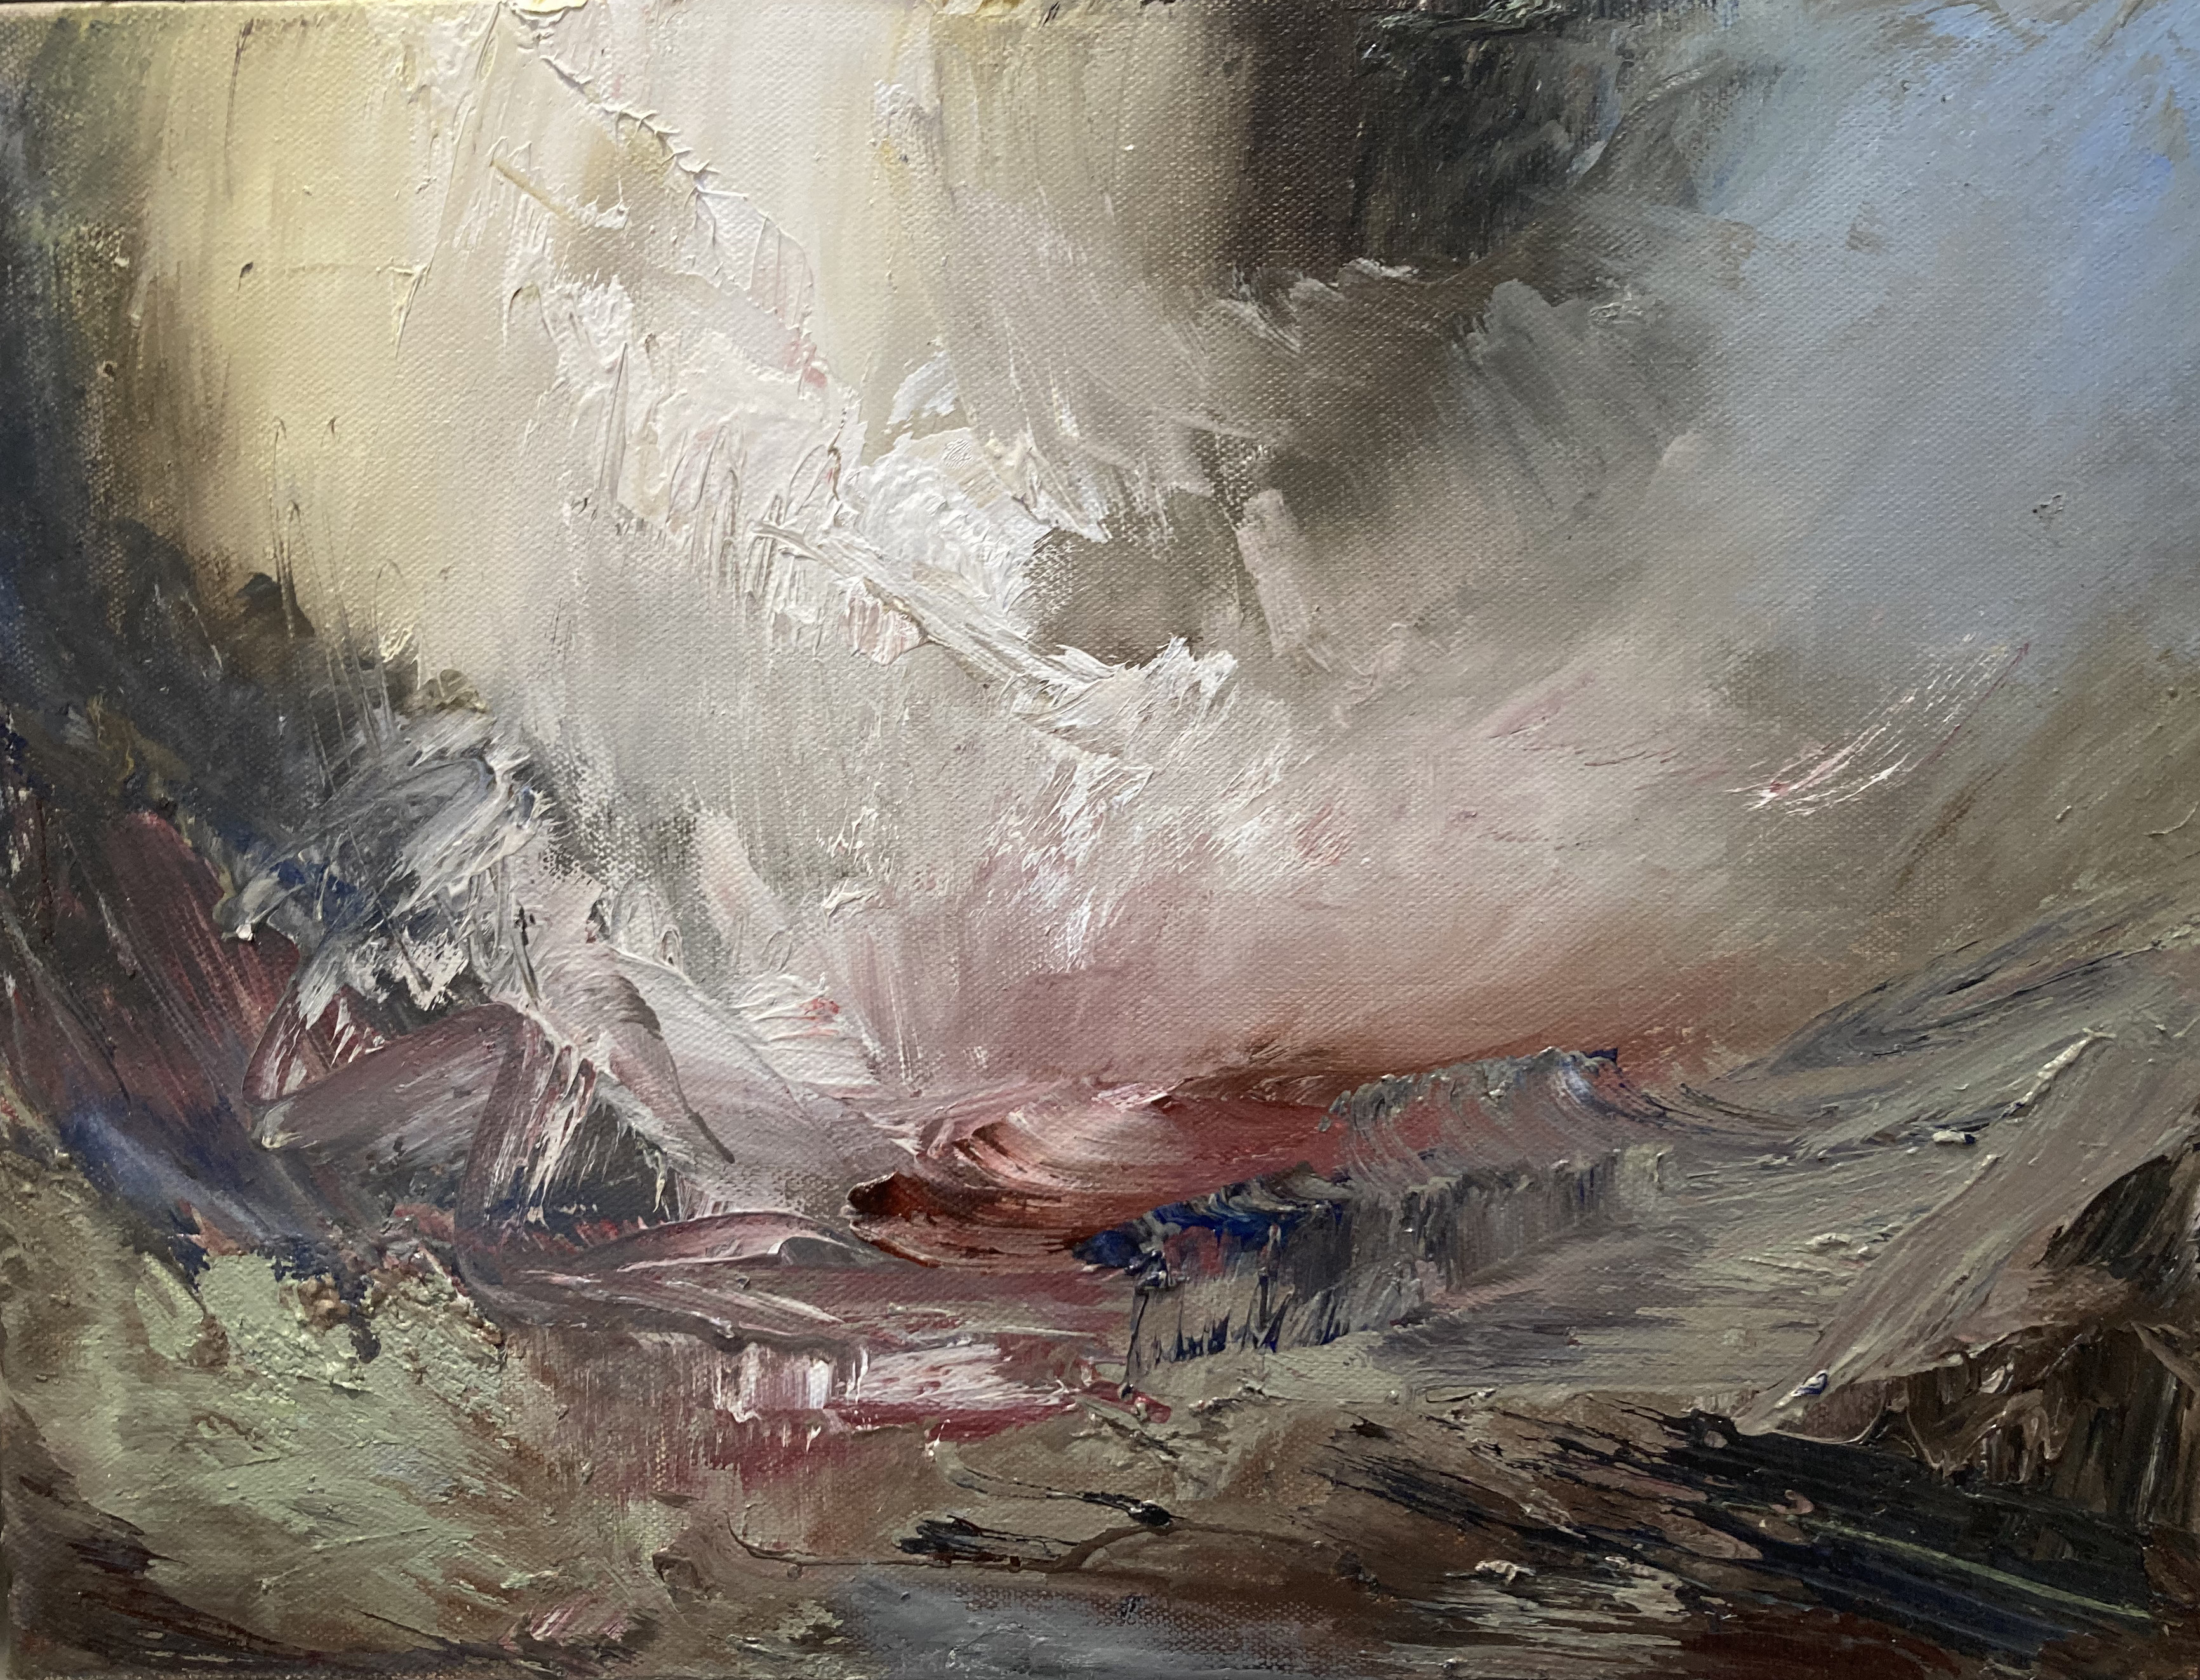 'Into the Light over Rocks', oil on linen, 30cm x 40cm, £1300